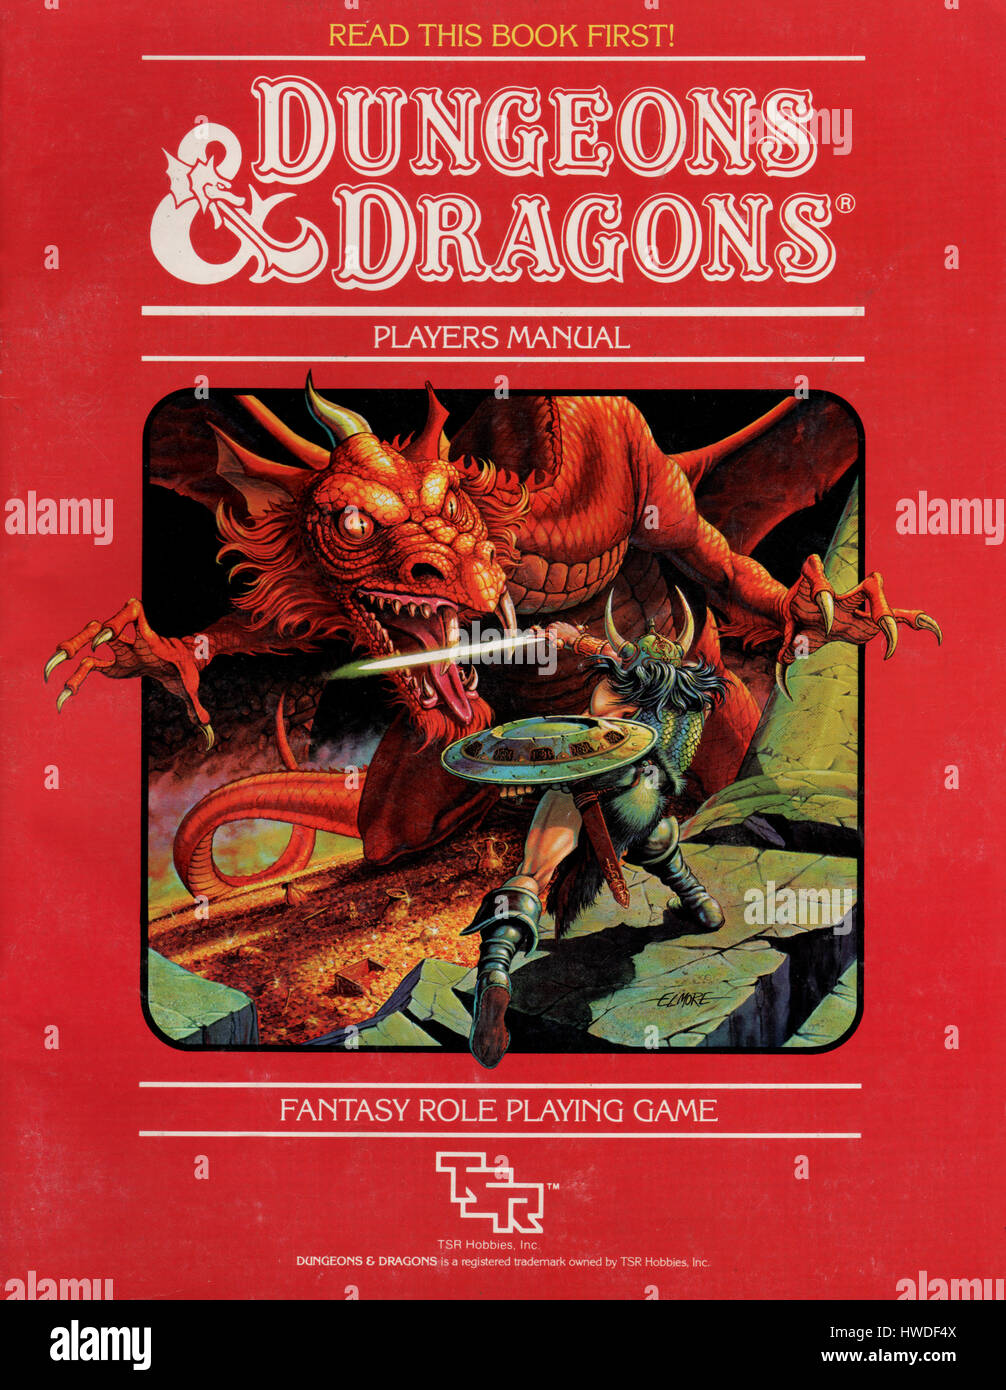 Dungeons and Dragons dungeon giocatori libro manuale pubblicato come parte  di un D&D starter pack nel 1983. Il gioco è stato progettato da Gary Gygax  e Dave Arneson nel 1974 e pubblicato